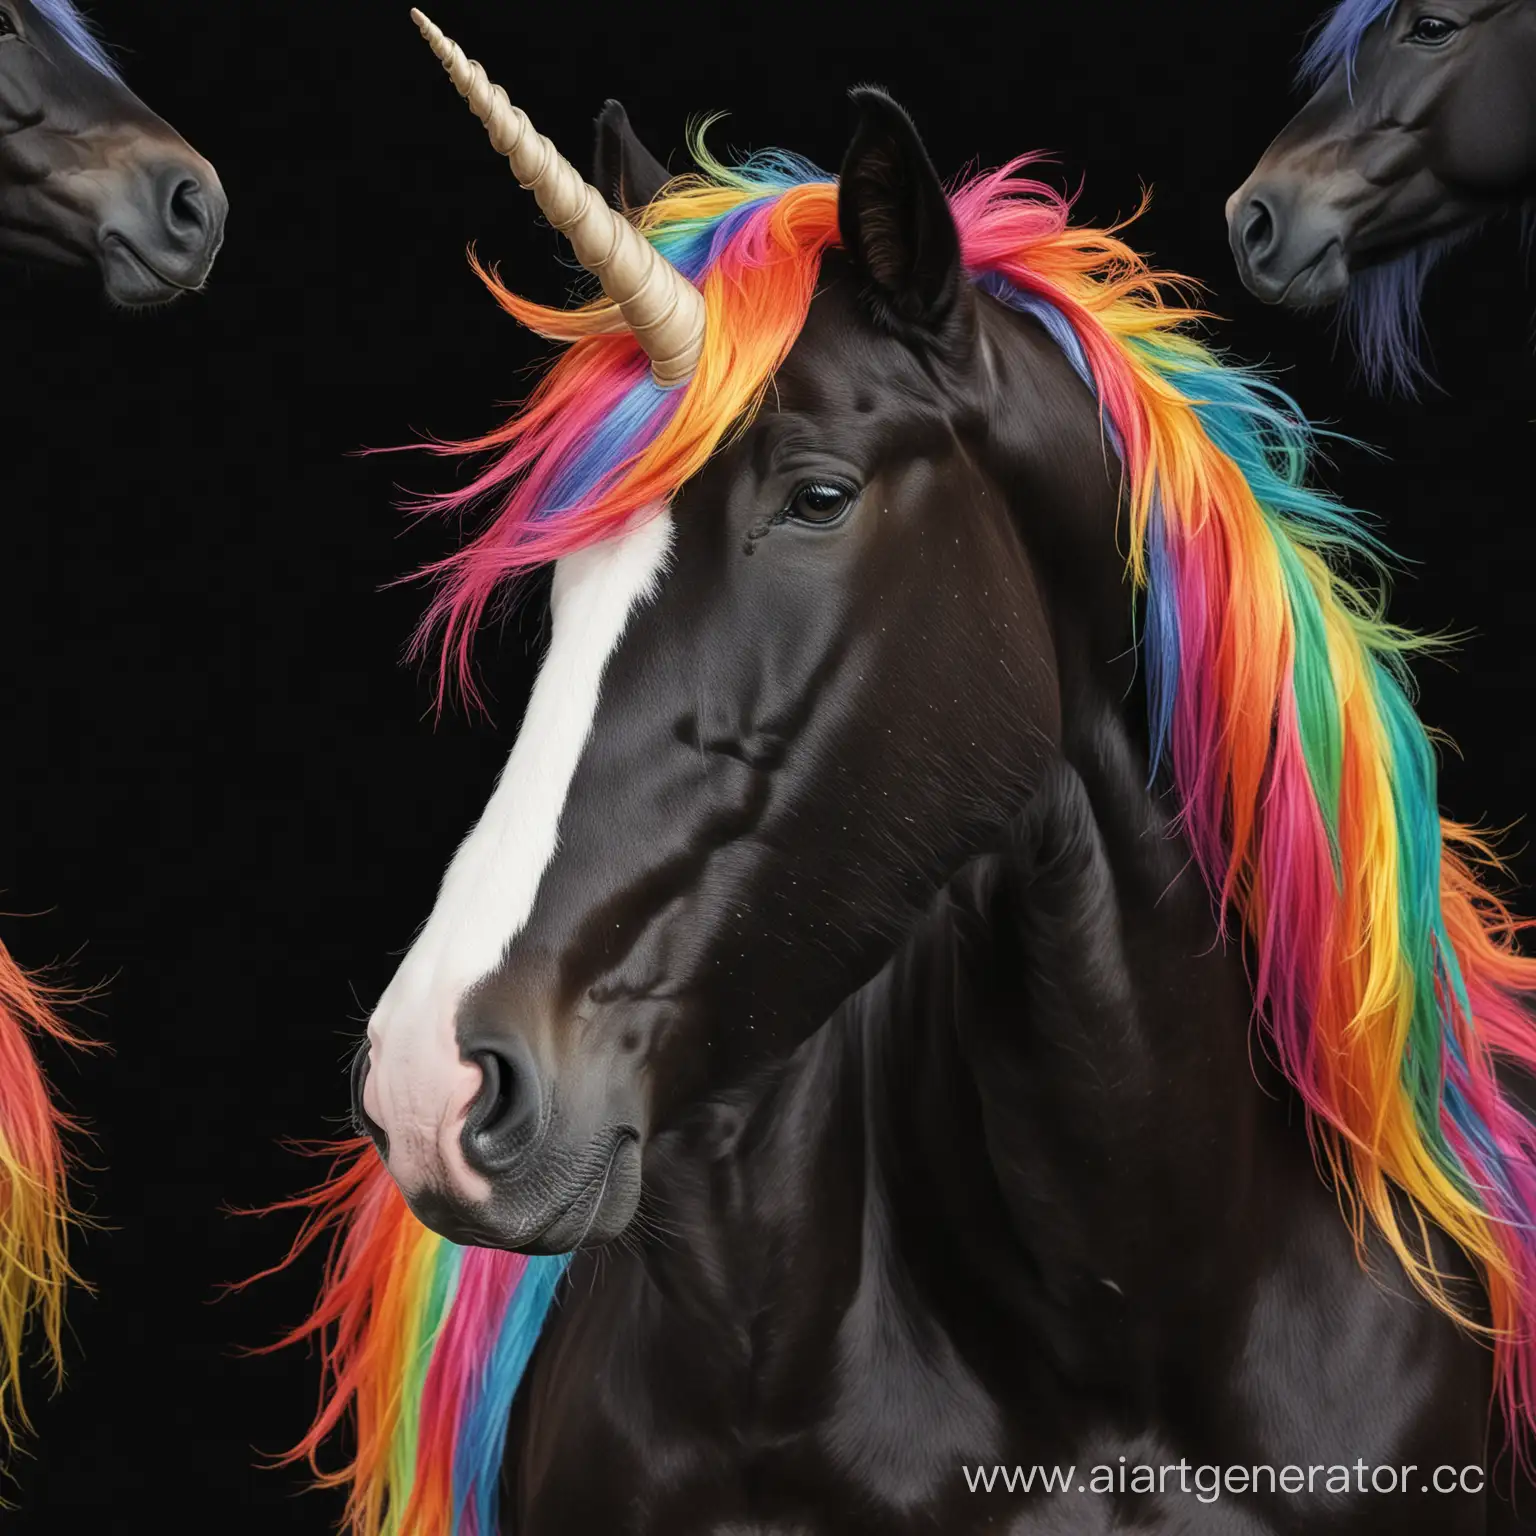 Magical-Unicorn-with-Vivid-Rainbow-Mane-on-a-Mysterious-Black-Canvas